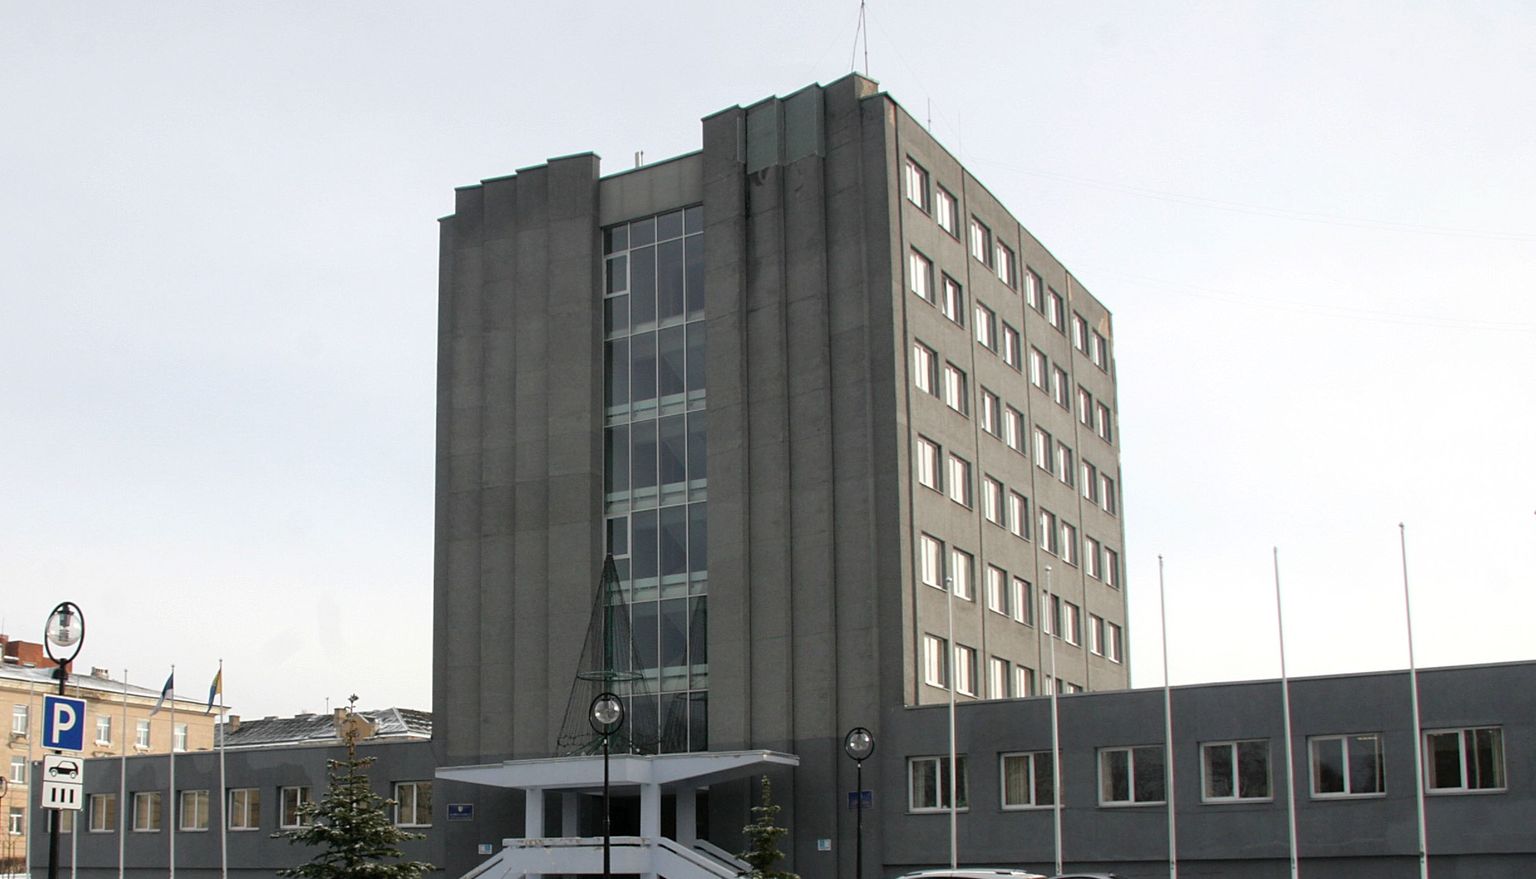 Так называемый серый дом является символом руководства города Кохтла-Ярве. Здесь располагаются городское управление и городское собрание.